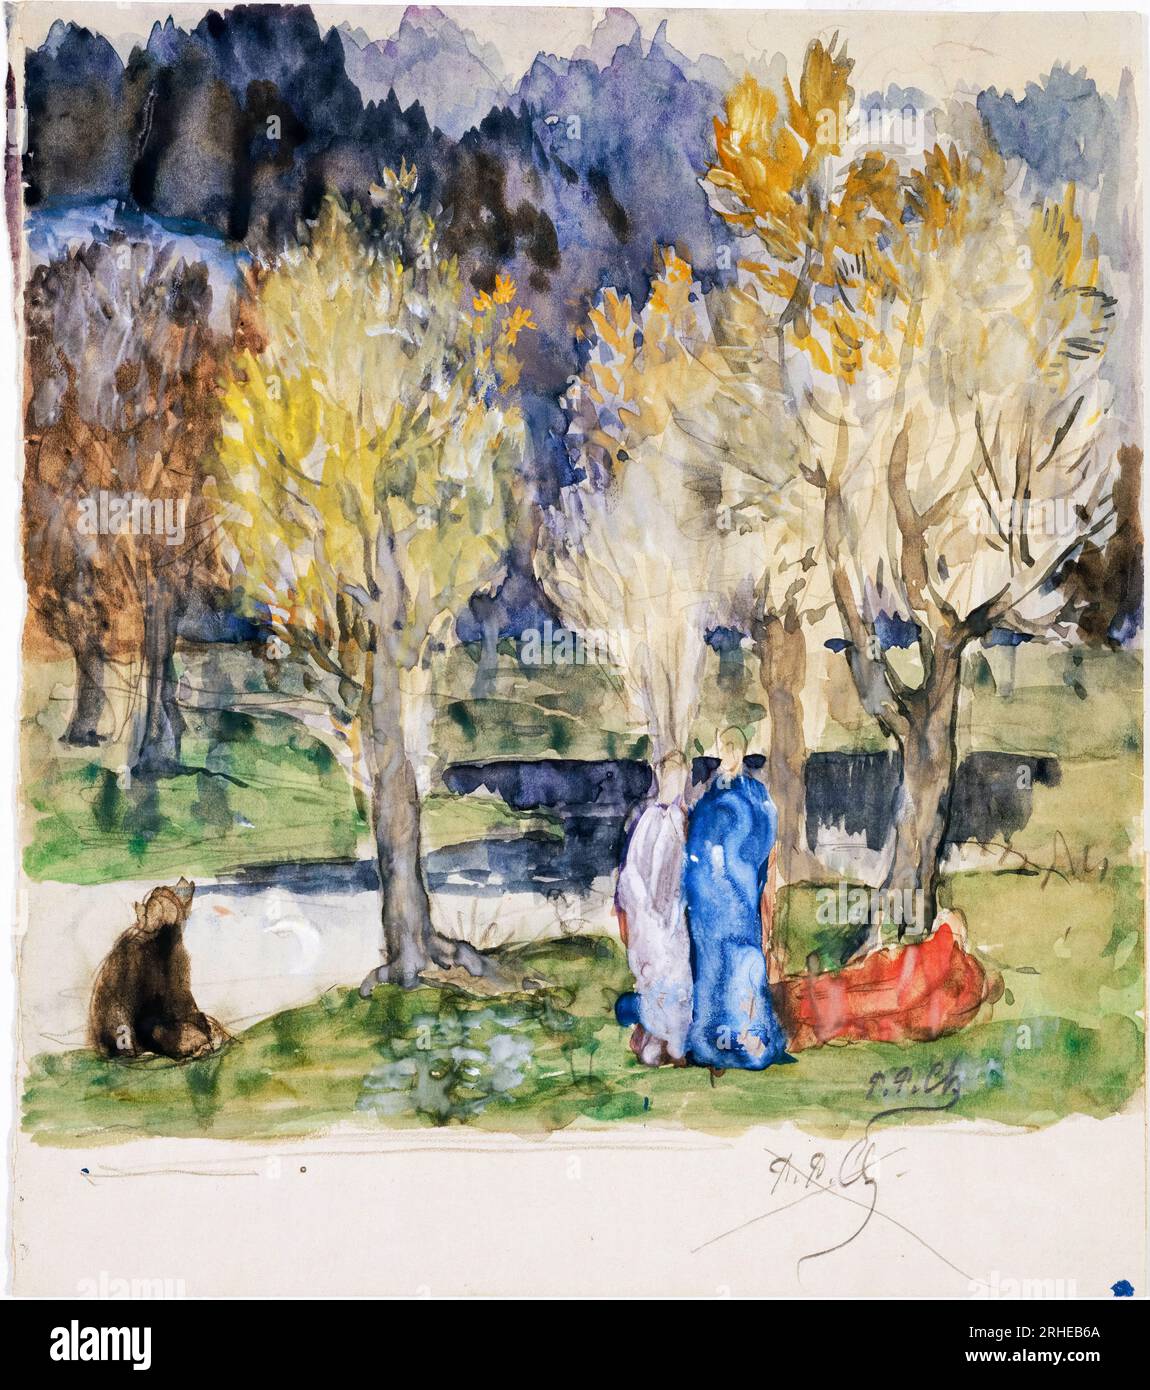 Pierre Puvis de Chavannes, Sacred Grove, watercolour painting, 1883-1884 Stock Photo